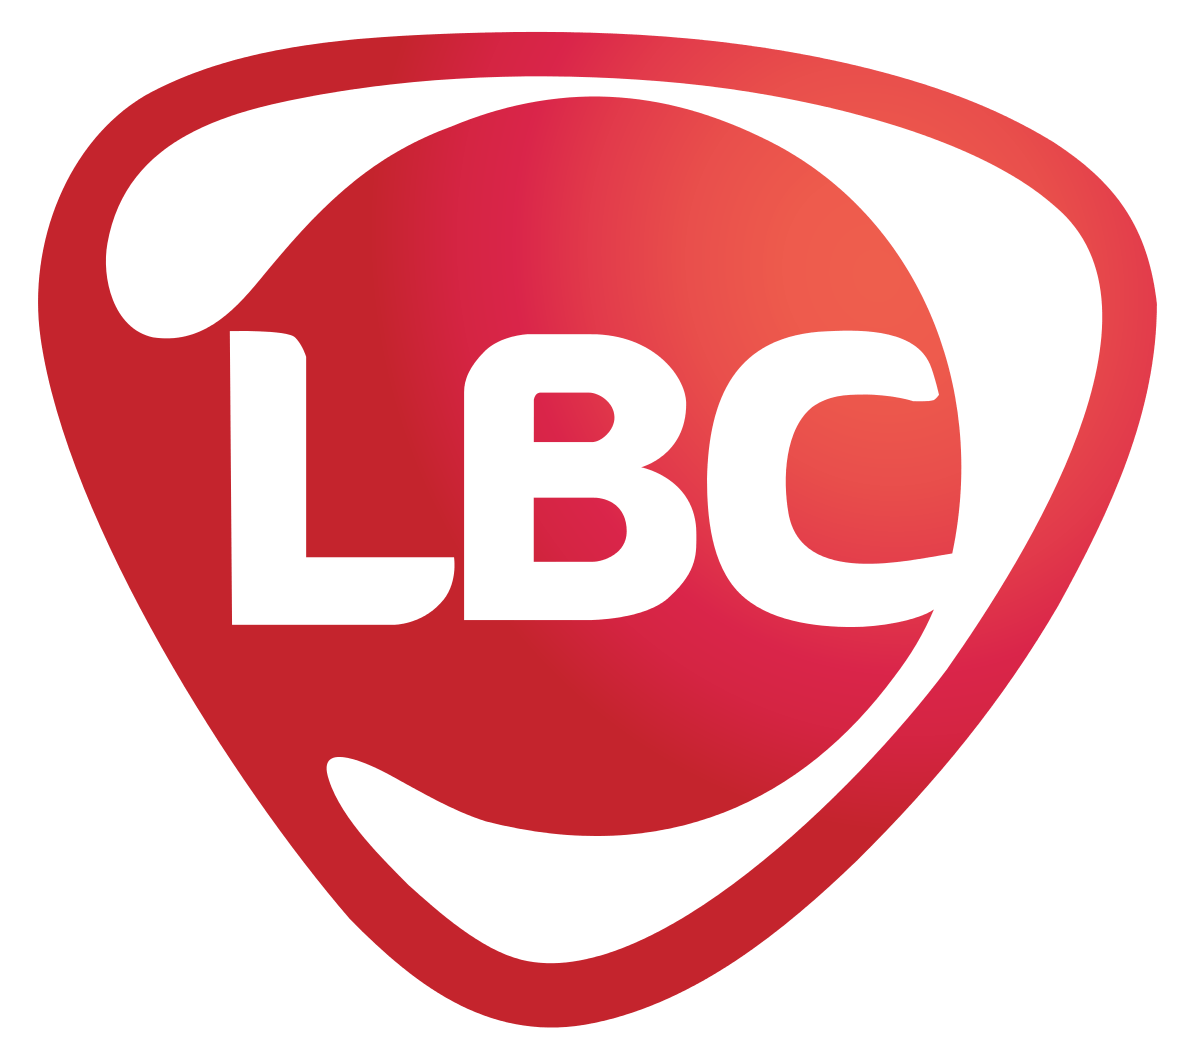 Filipino Company Logo - LBC Express